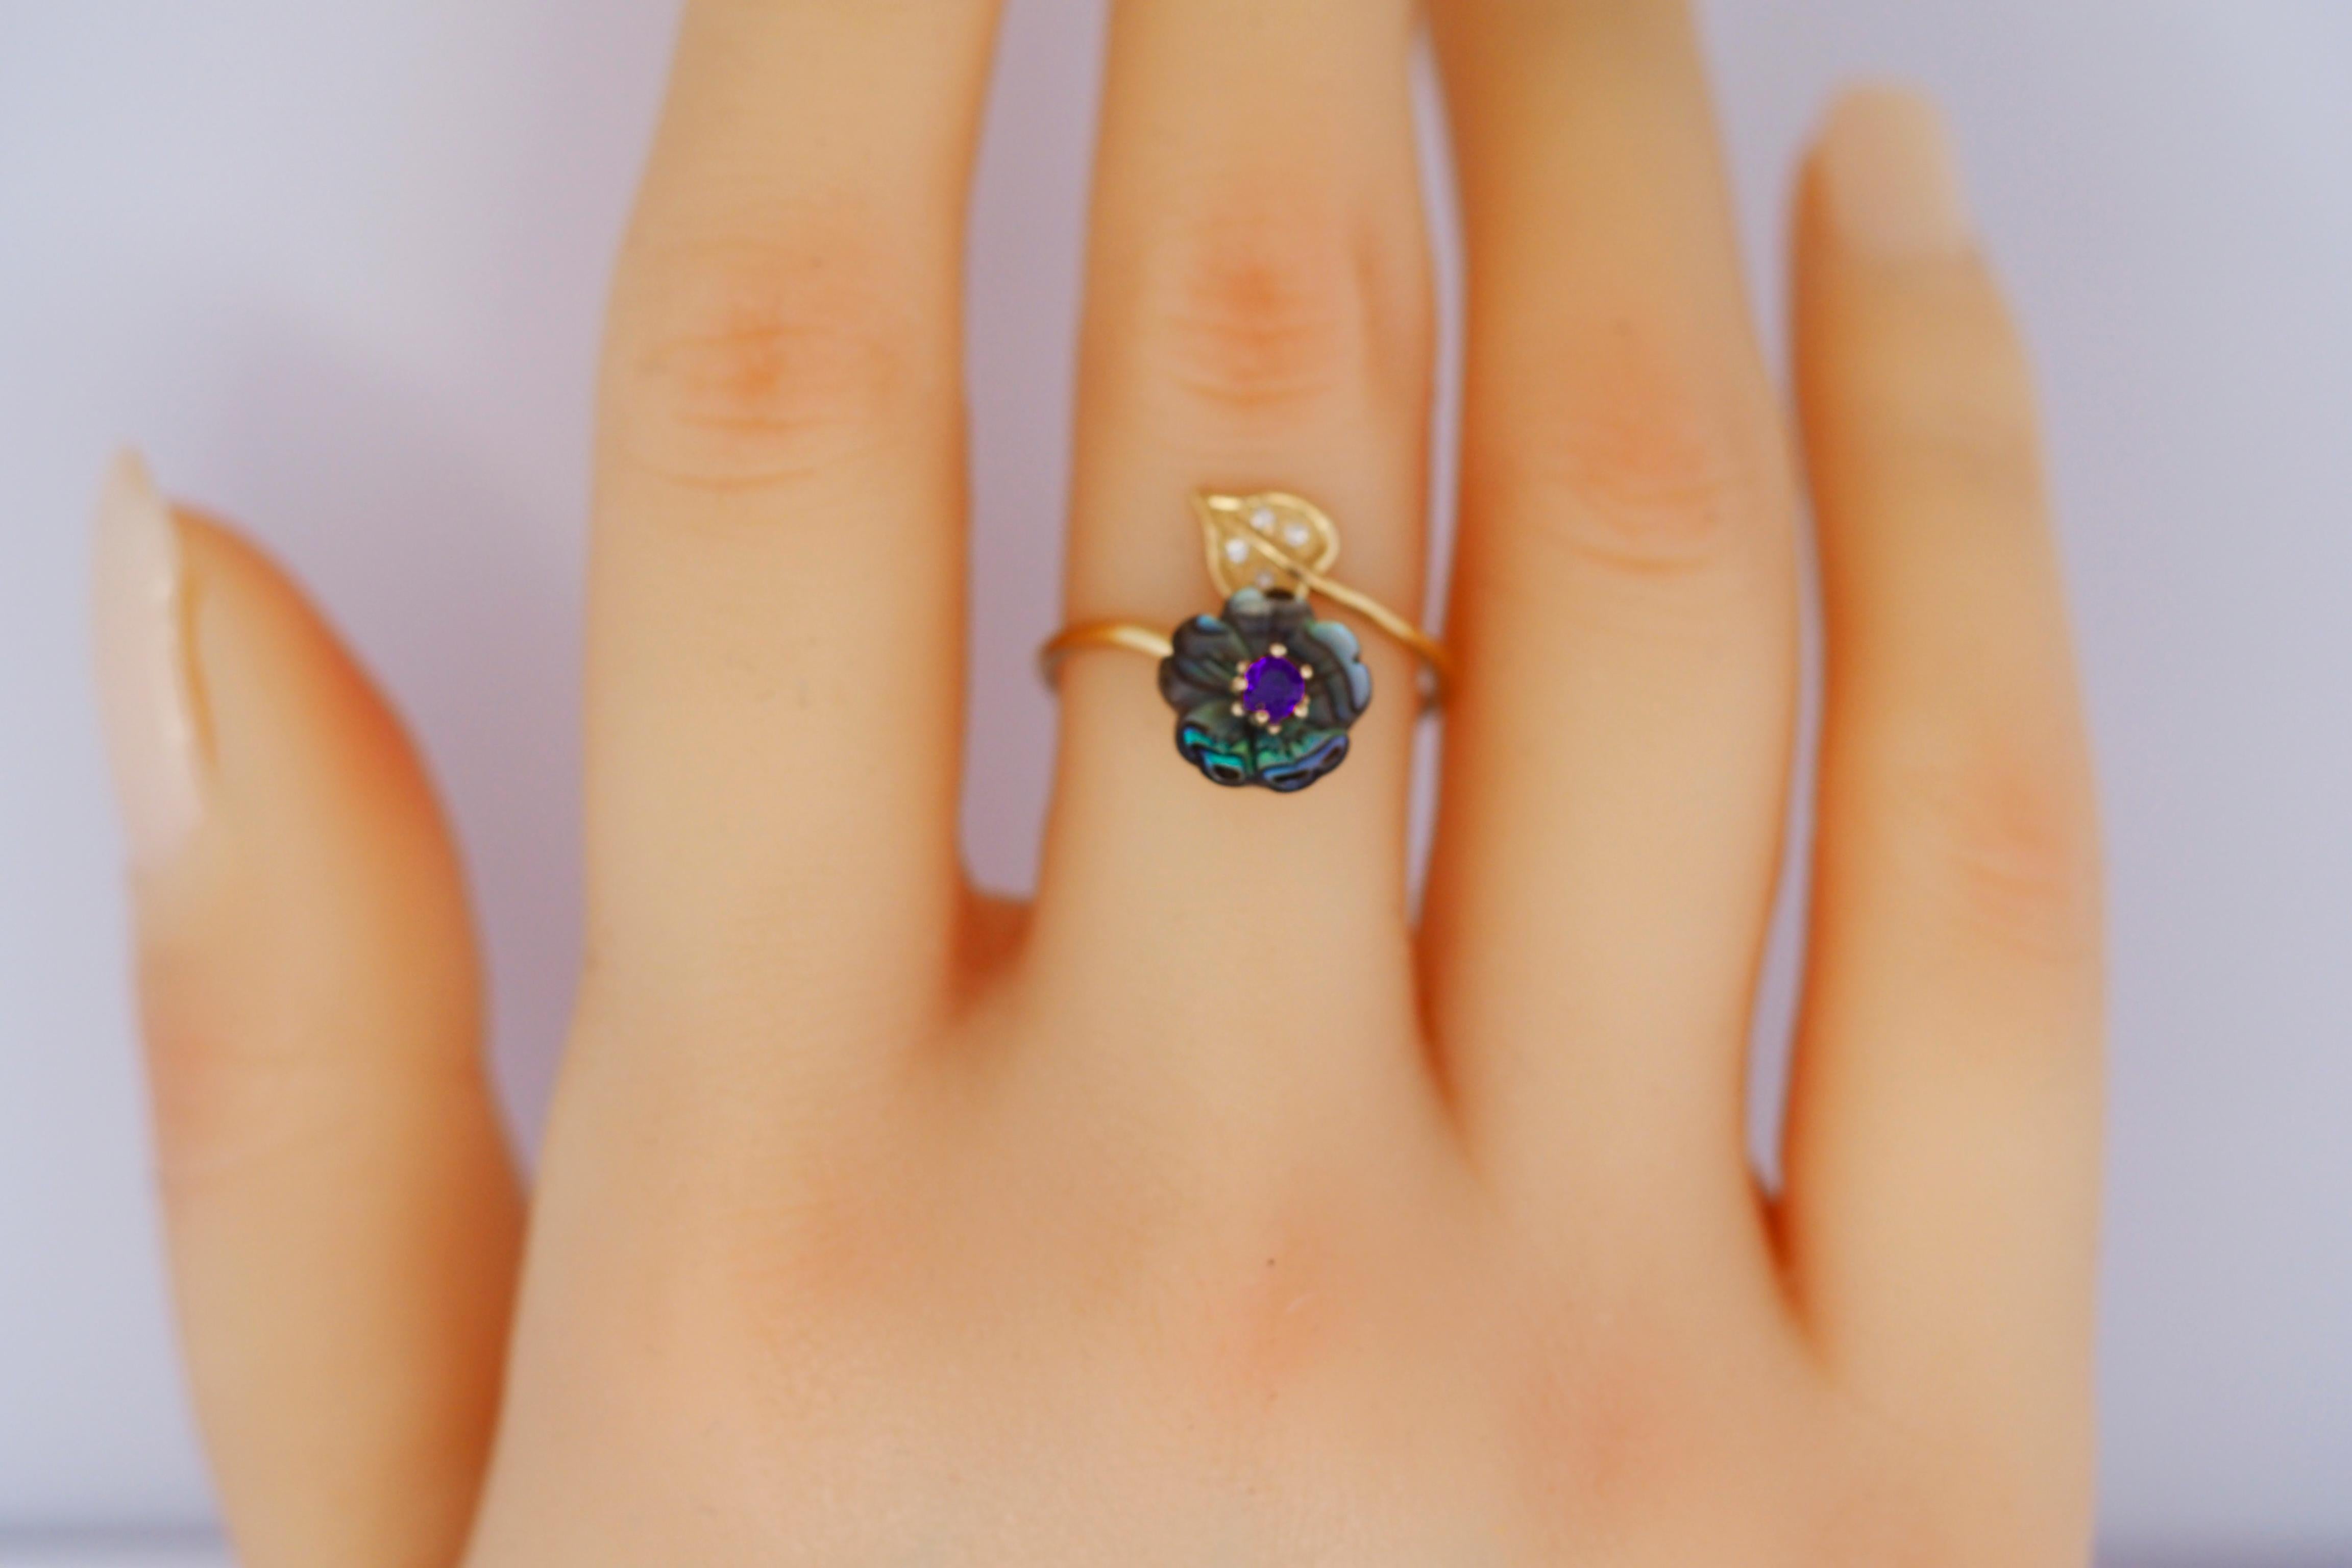 For Sale:  Royal blue gemstone 14k  gold ring.  2